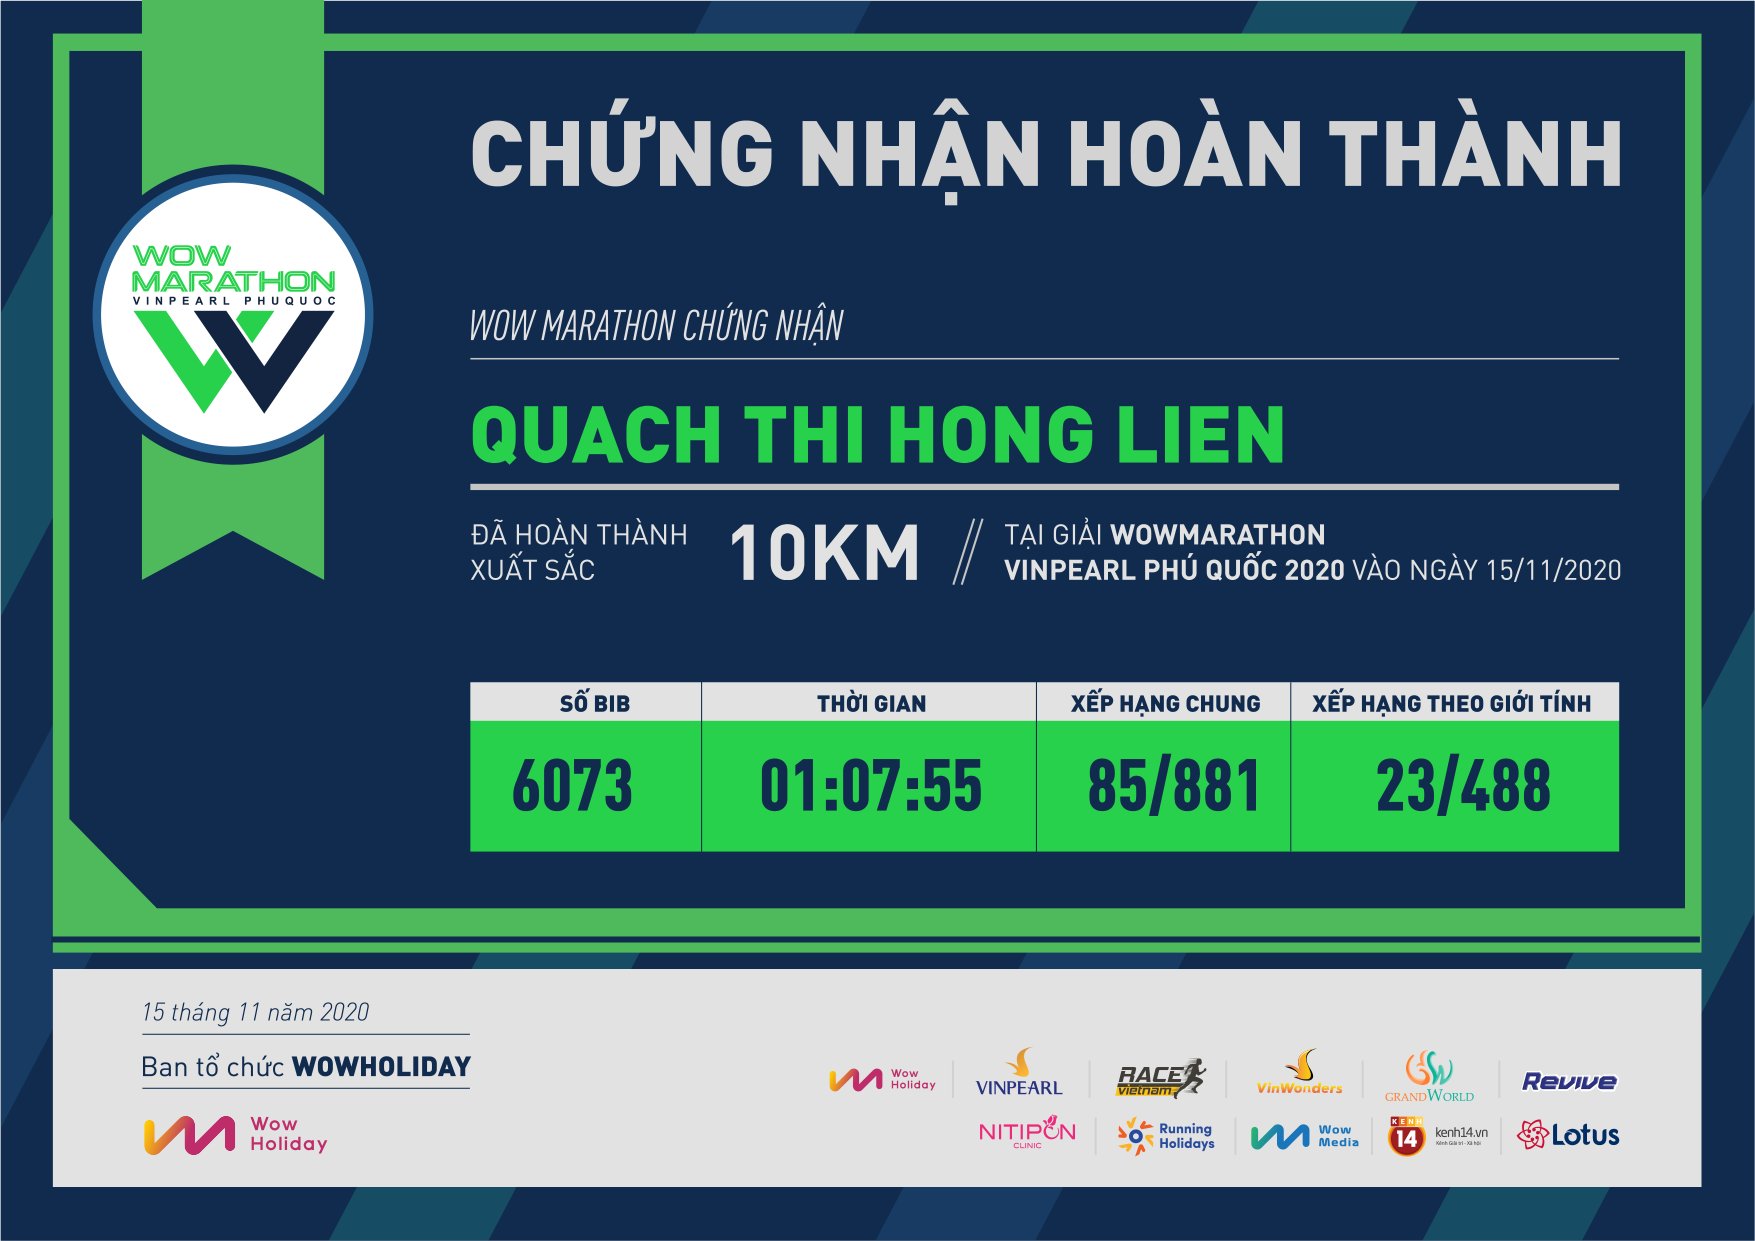 6073 - Quach thi hong lien